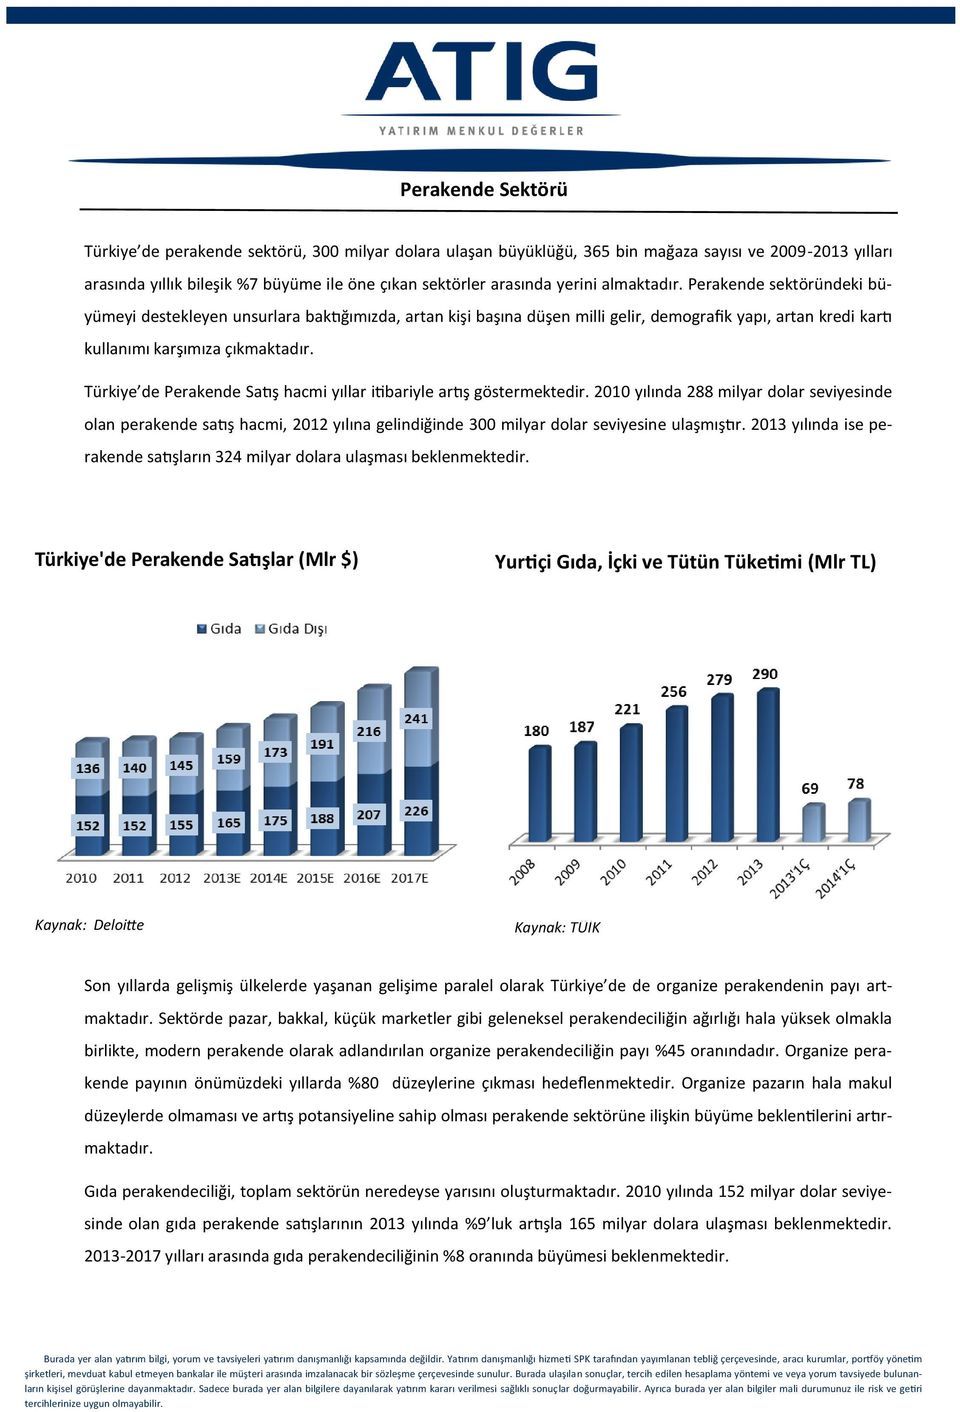 Türkiye de Perakende Satış hacmi yıllar itibariyle artış göstermektedir.